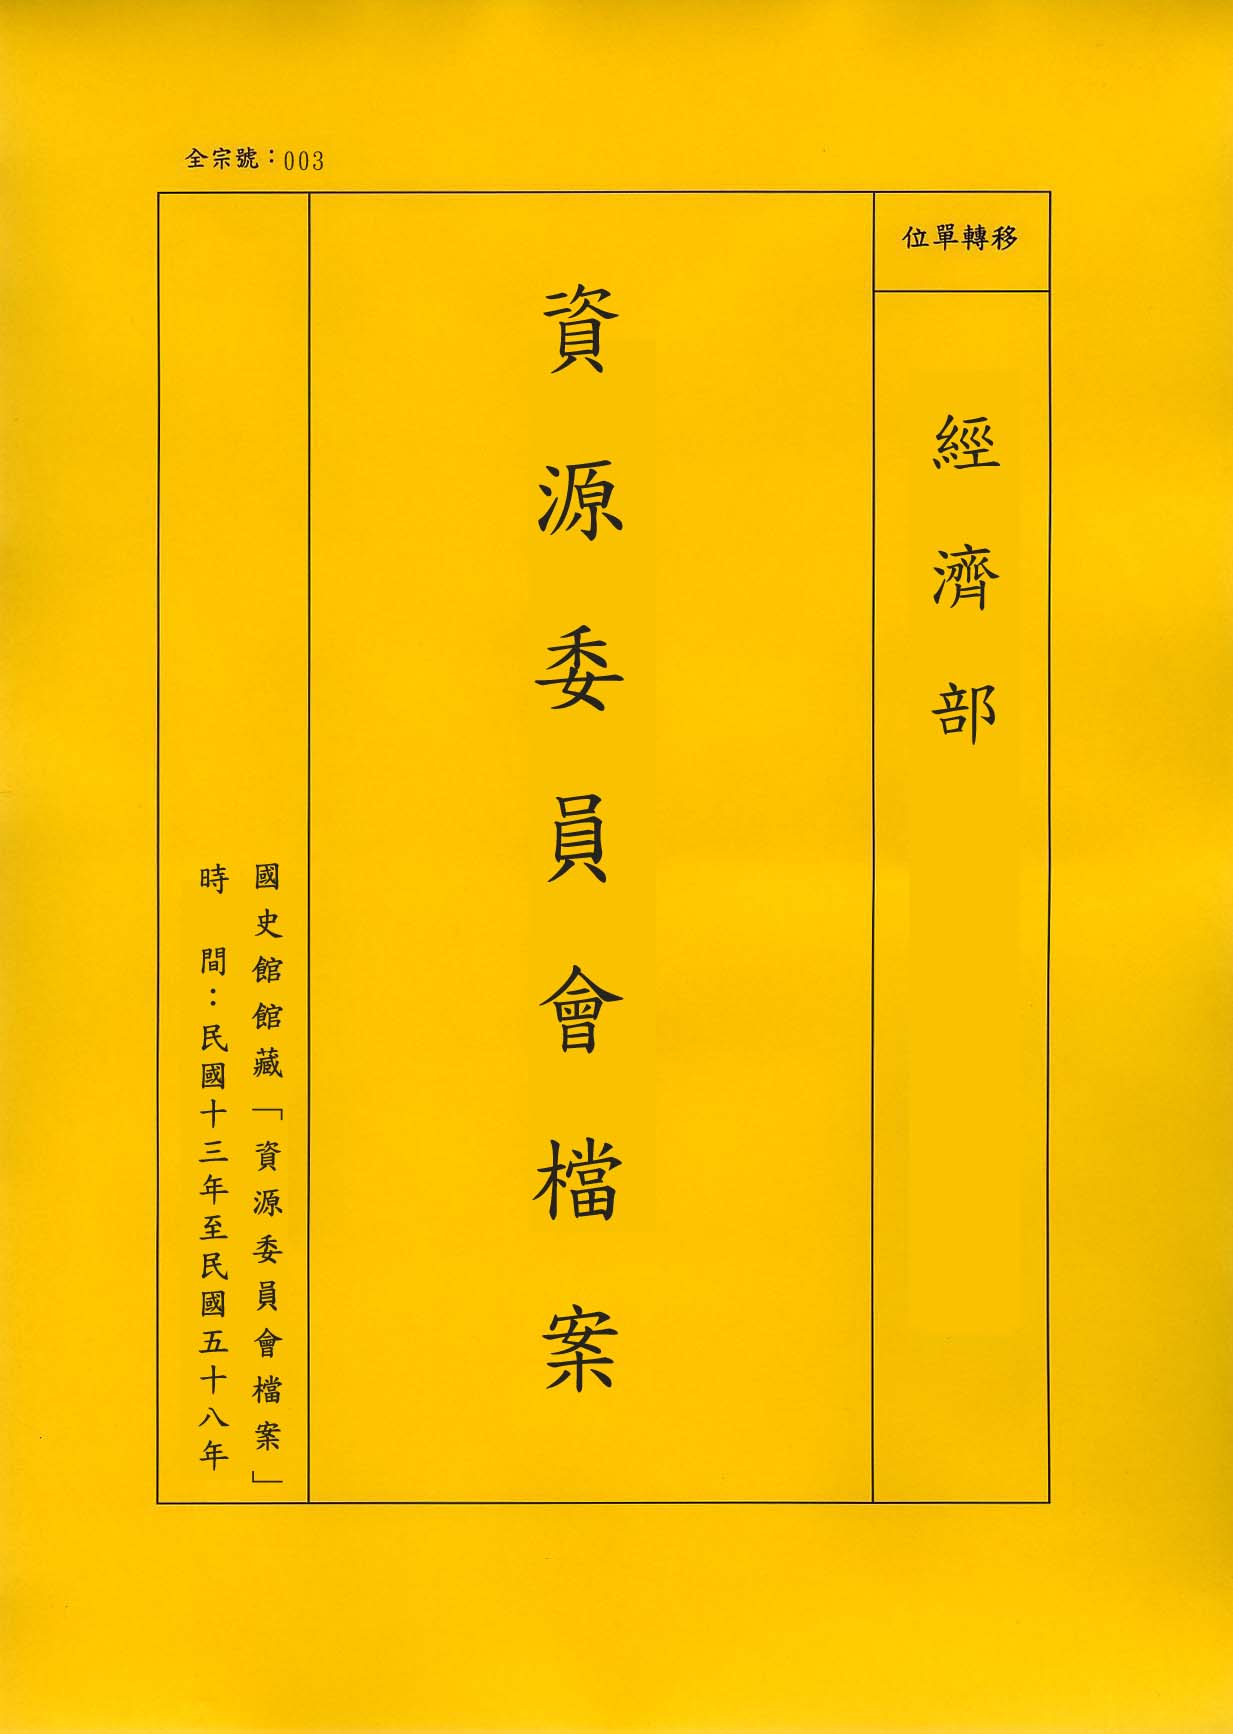 卷名:棉紡織工廠調查表─上海(一)(003-010306-0201)